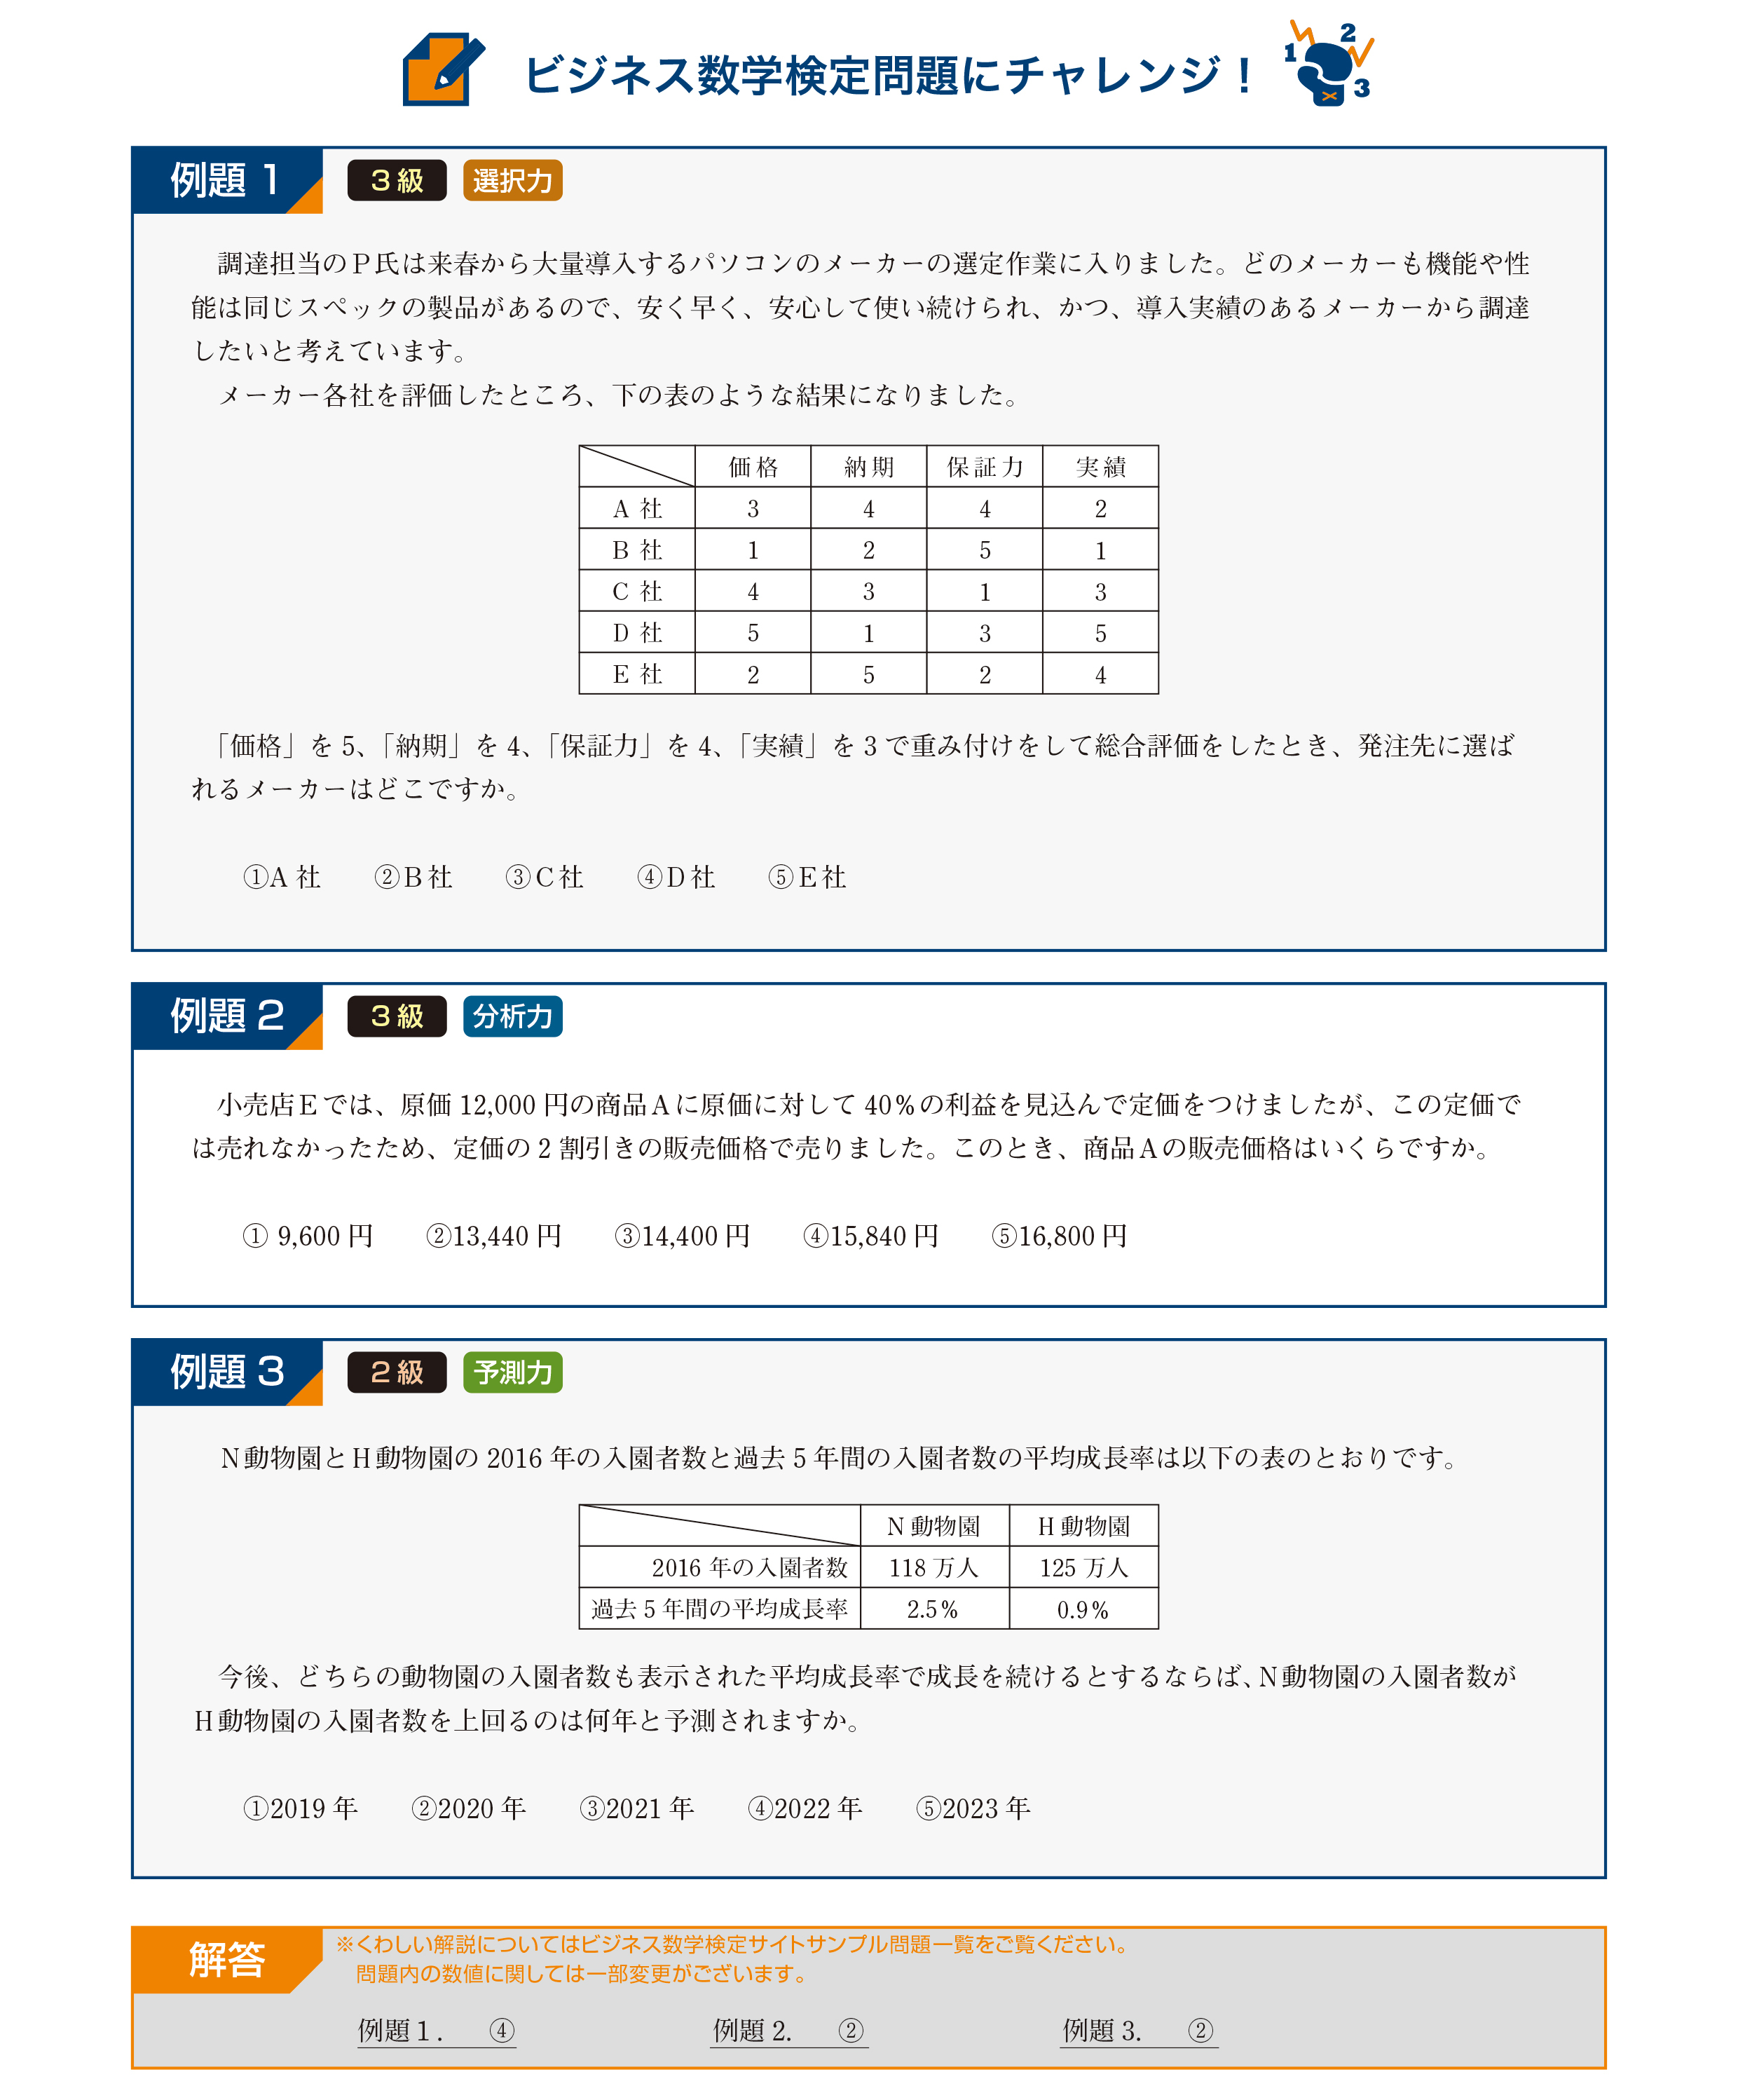 日本数学検定協会 ビジネスでの数字活用スキルをウェブ上で測定する ビジネス数学検定 の年度実施日程を発表 Edtech Media